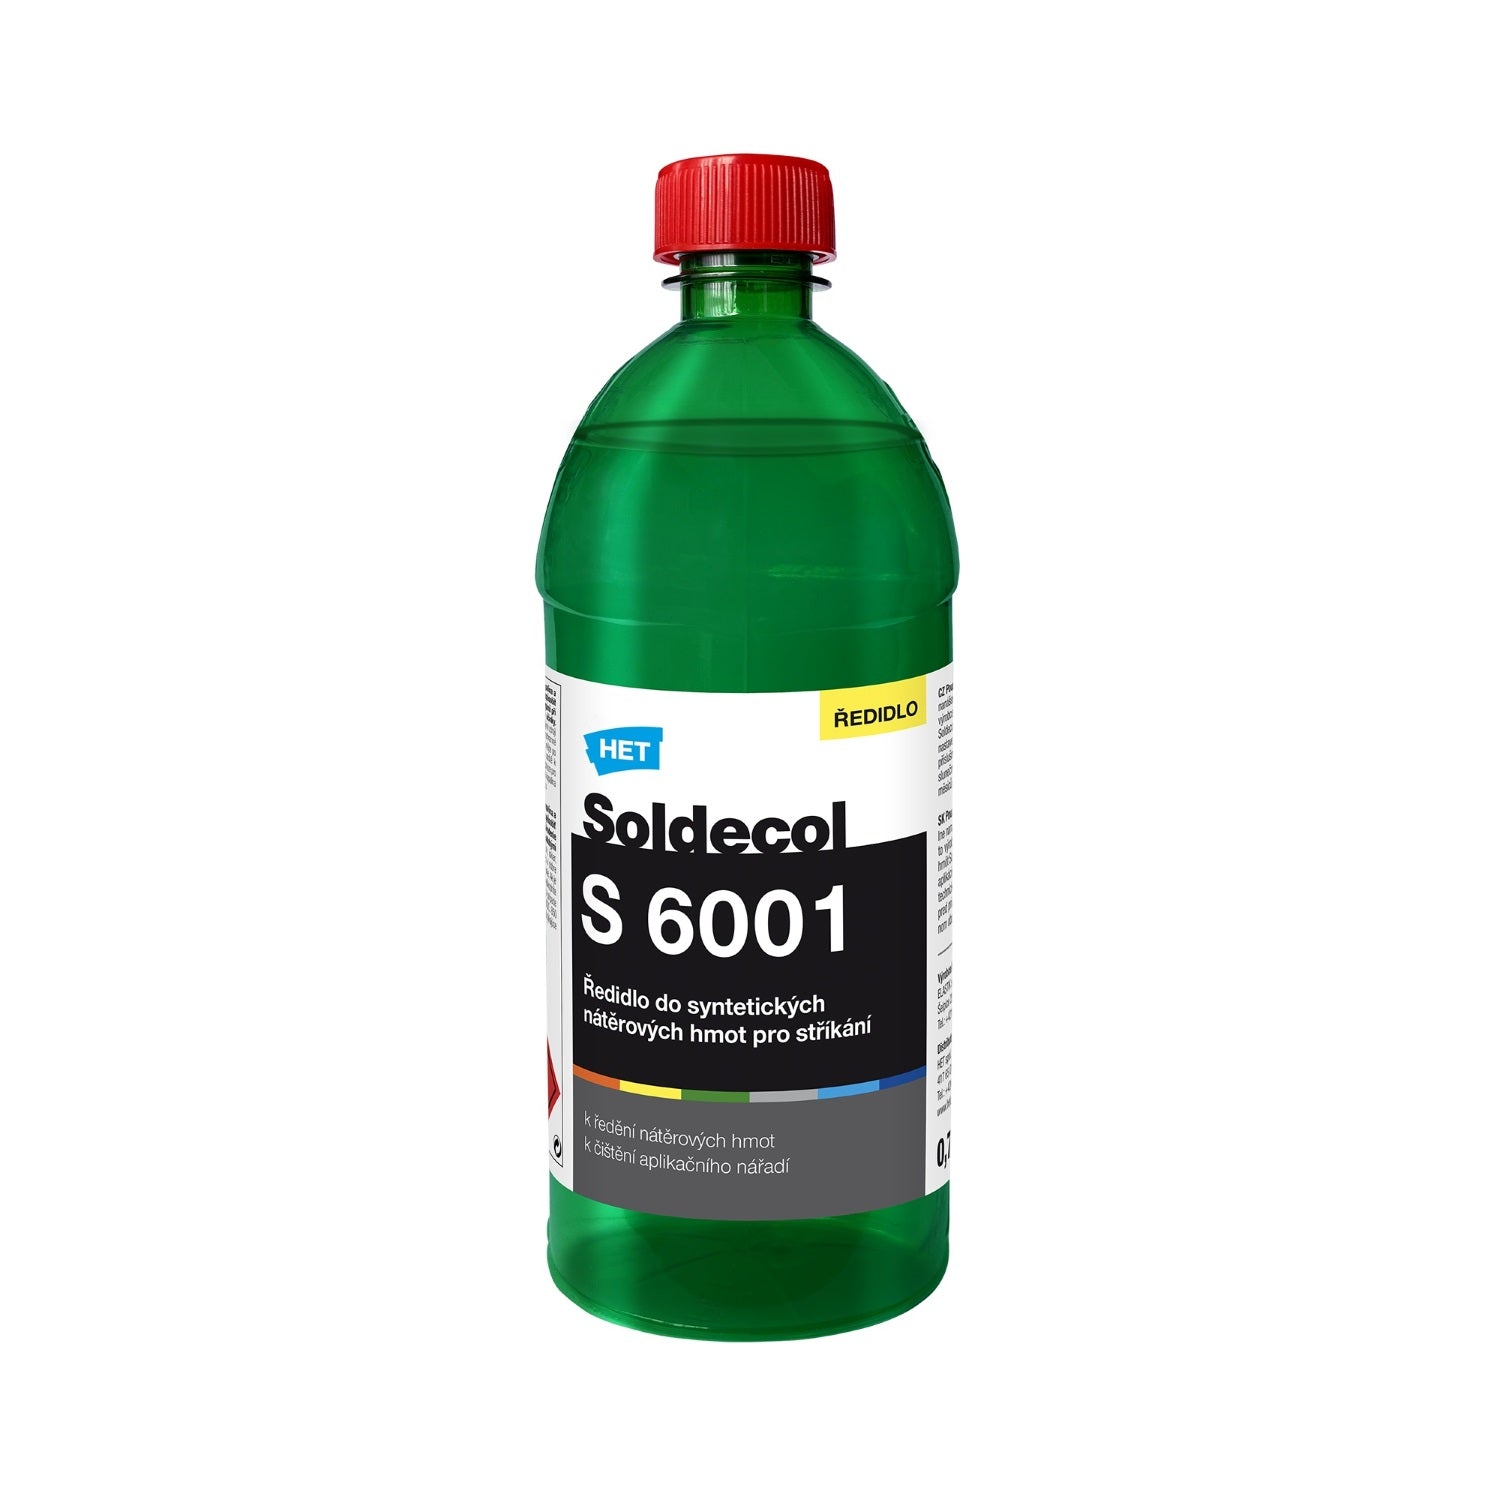 HET Soldecol S 6001 riedidlo do syntetických náterových hmôt s rýchlim zasychaním 0,4 l